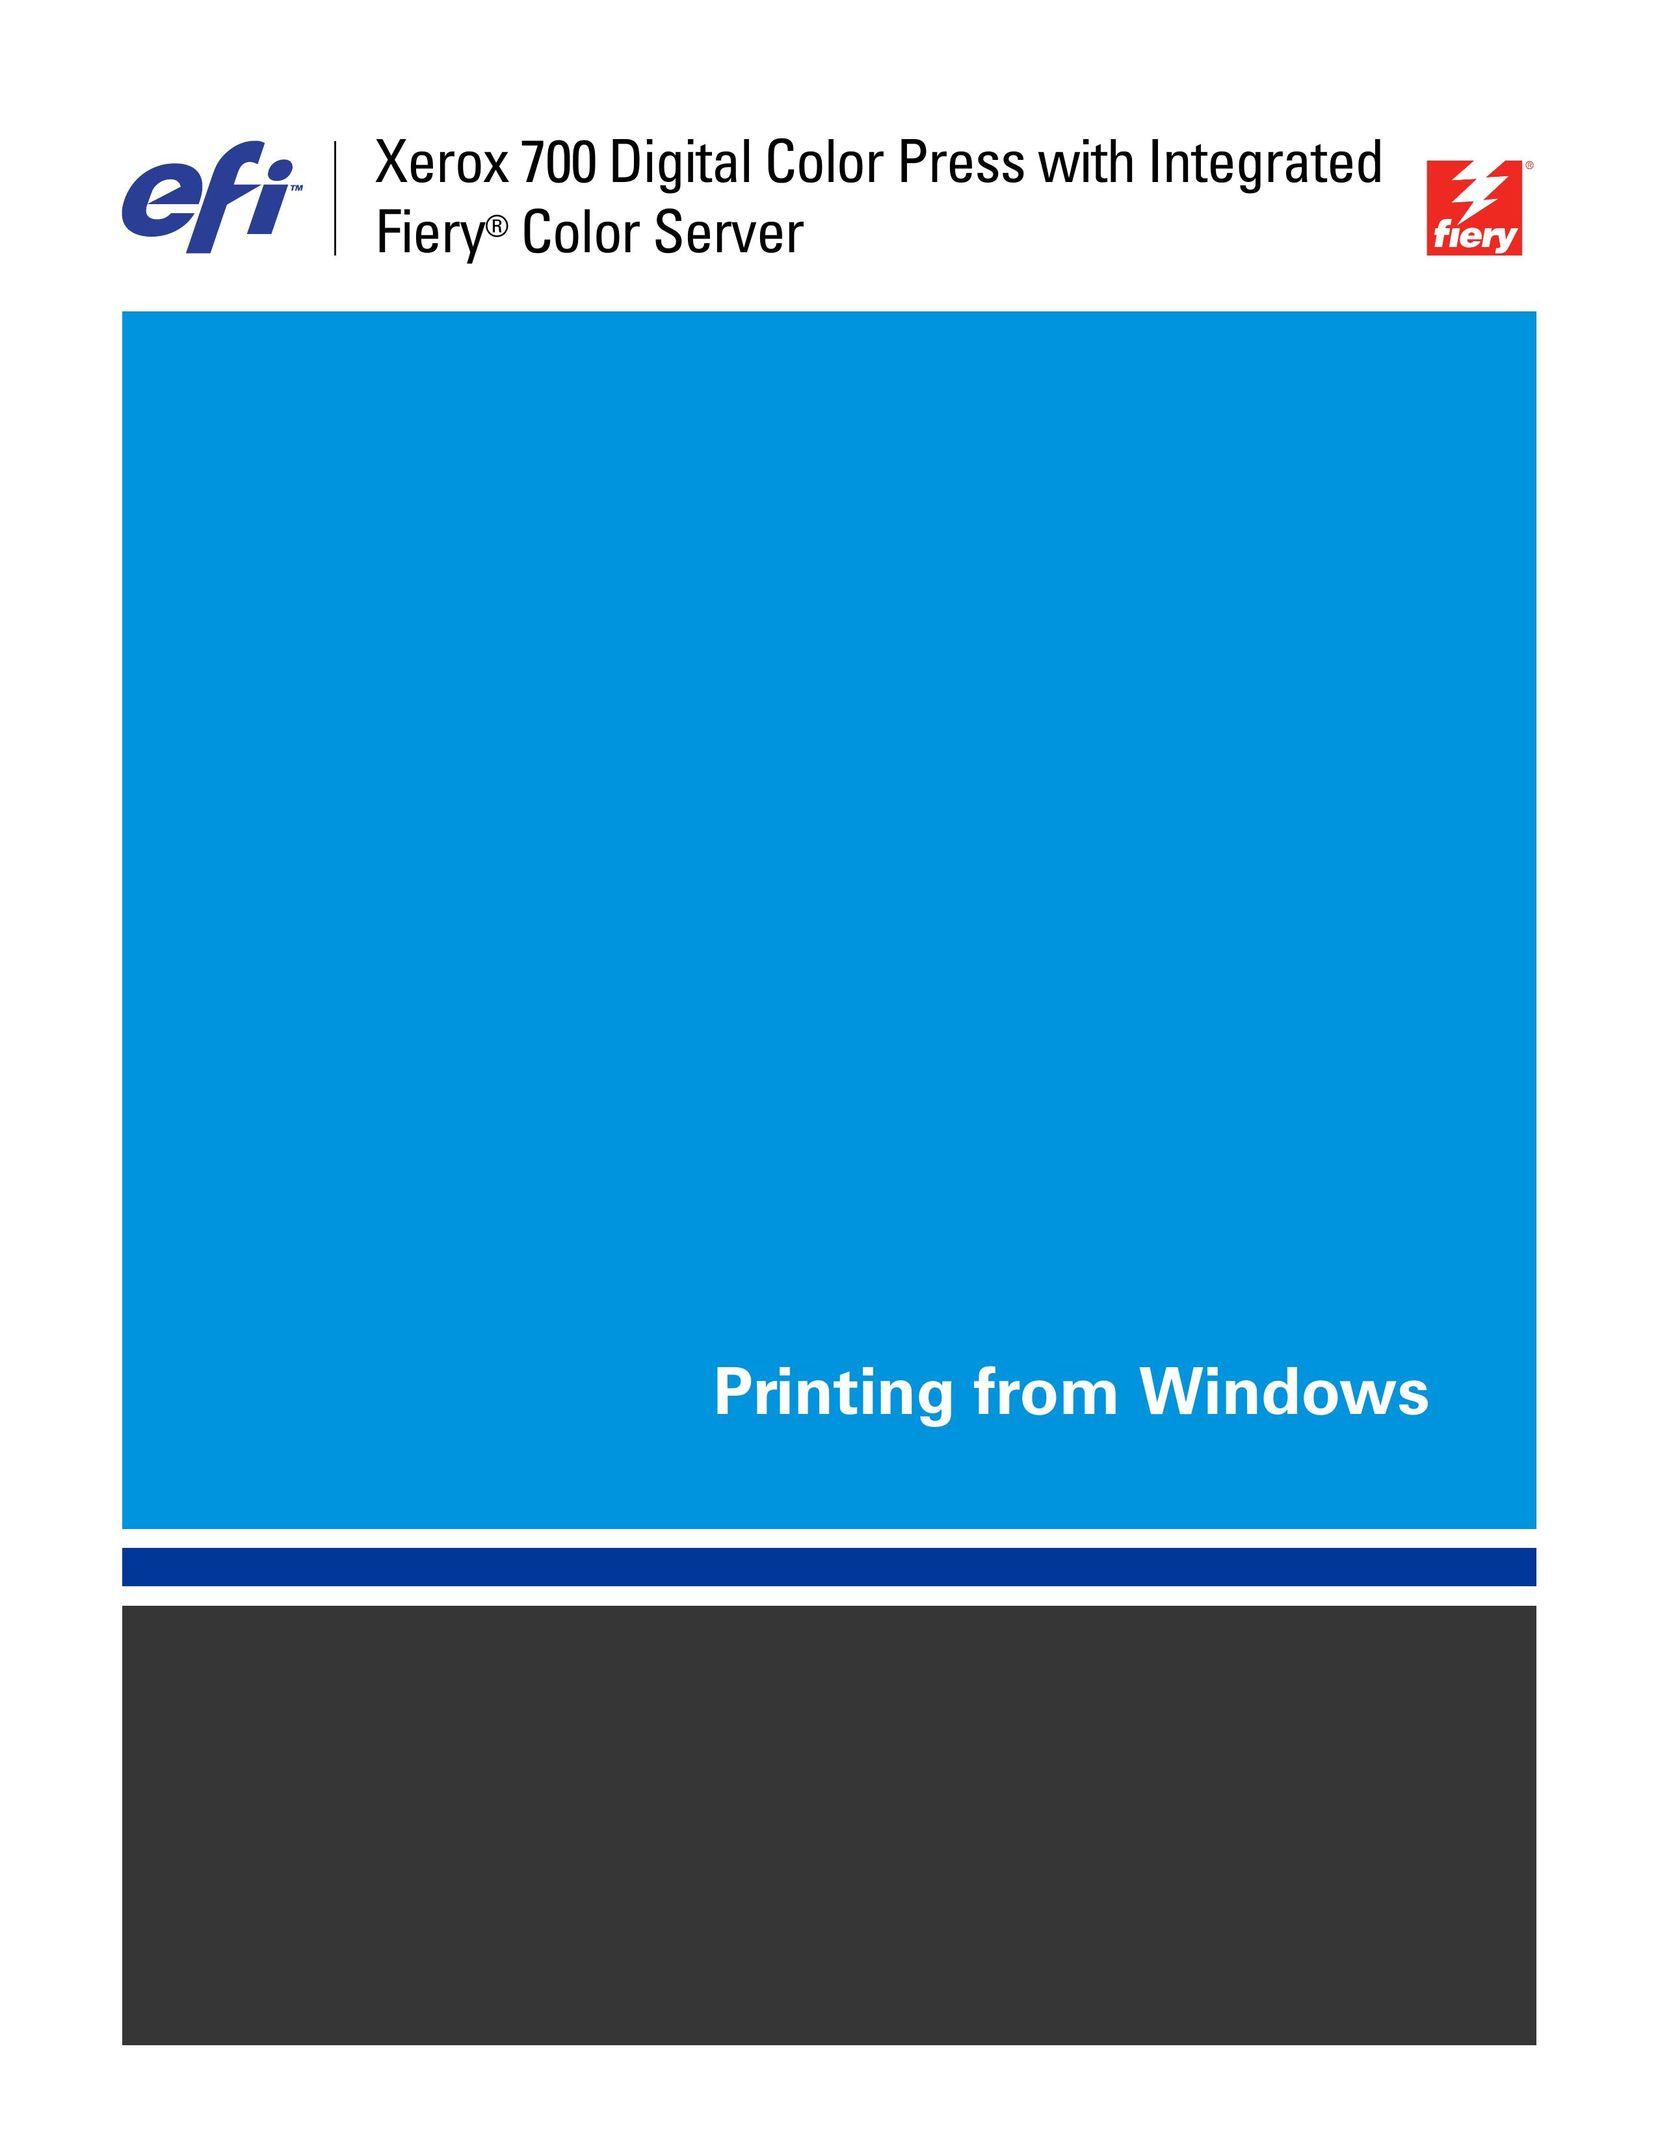 Xerox 019-6402 Printer User Manual